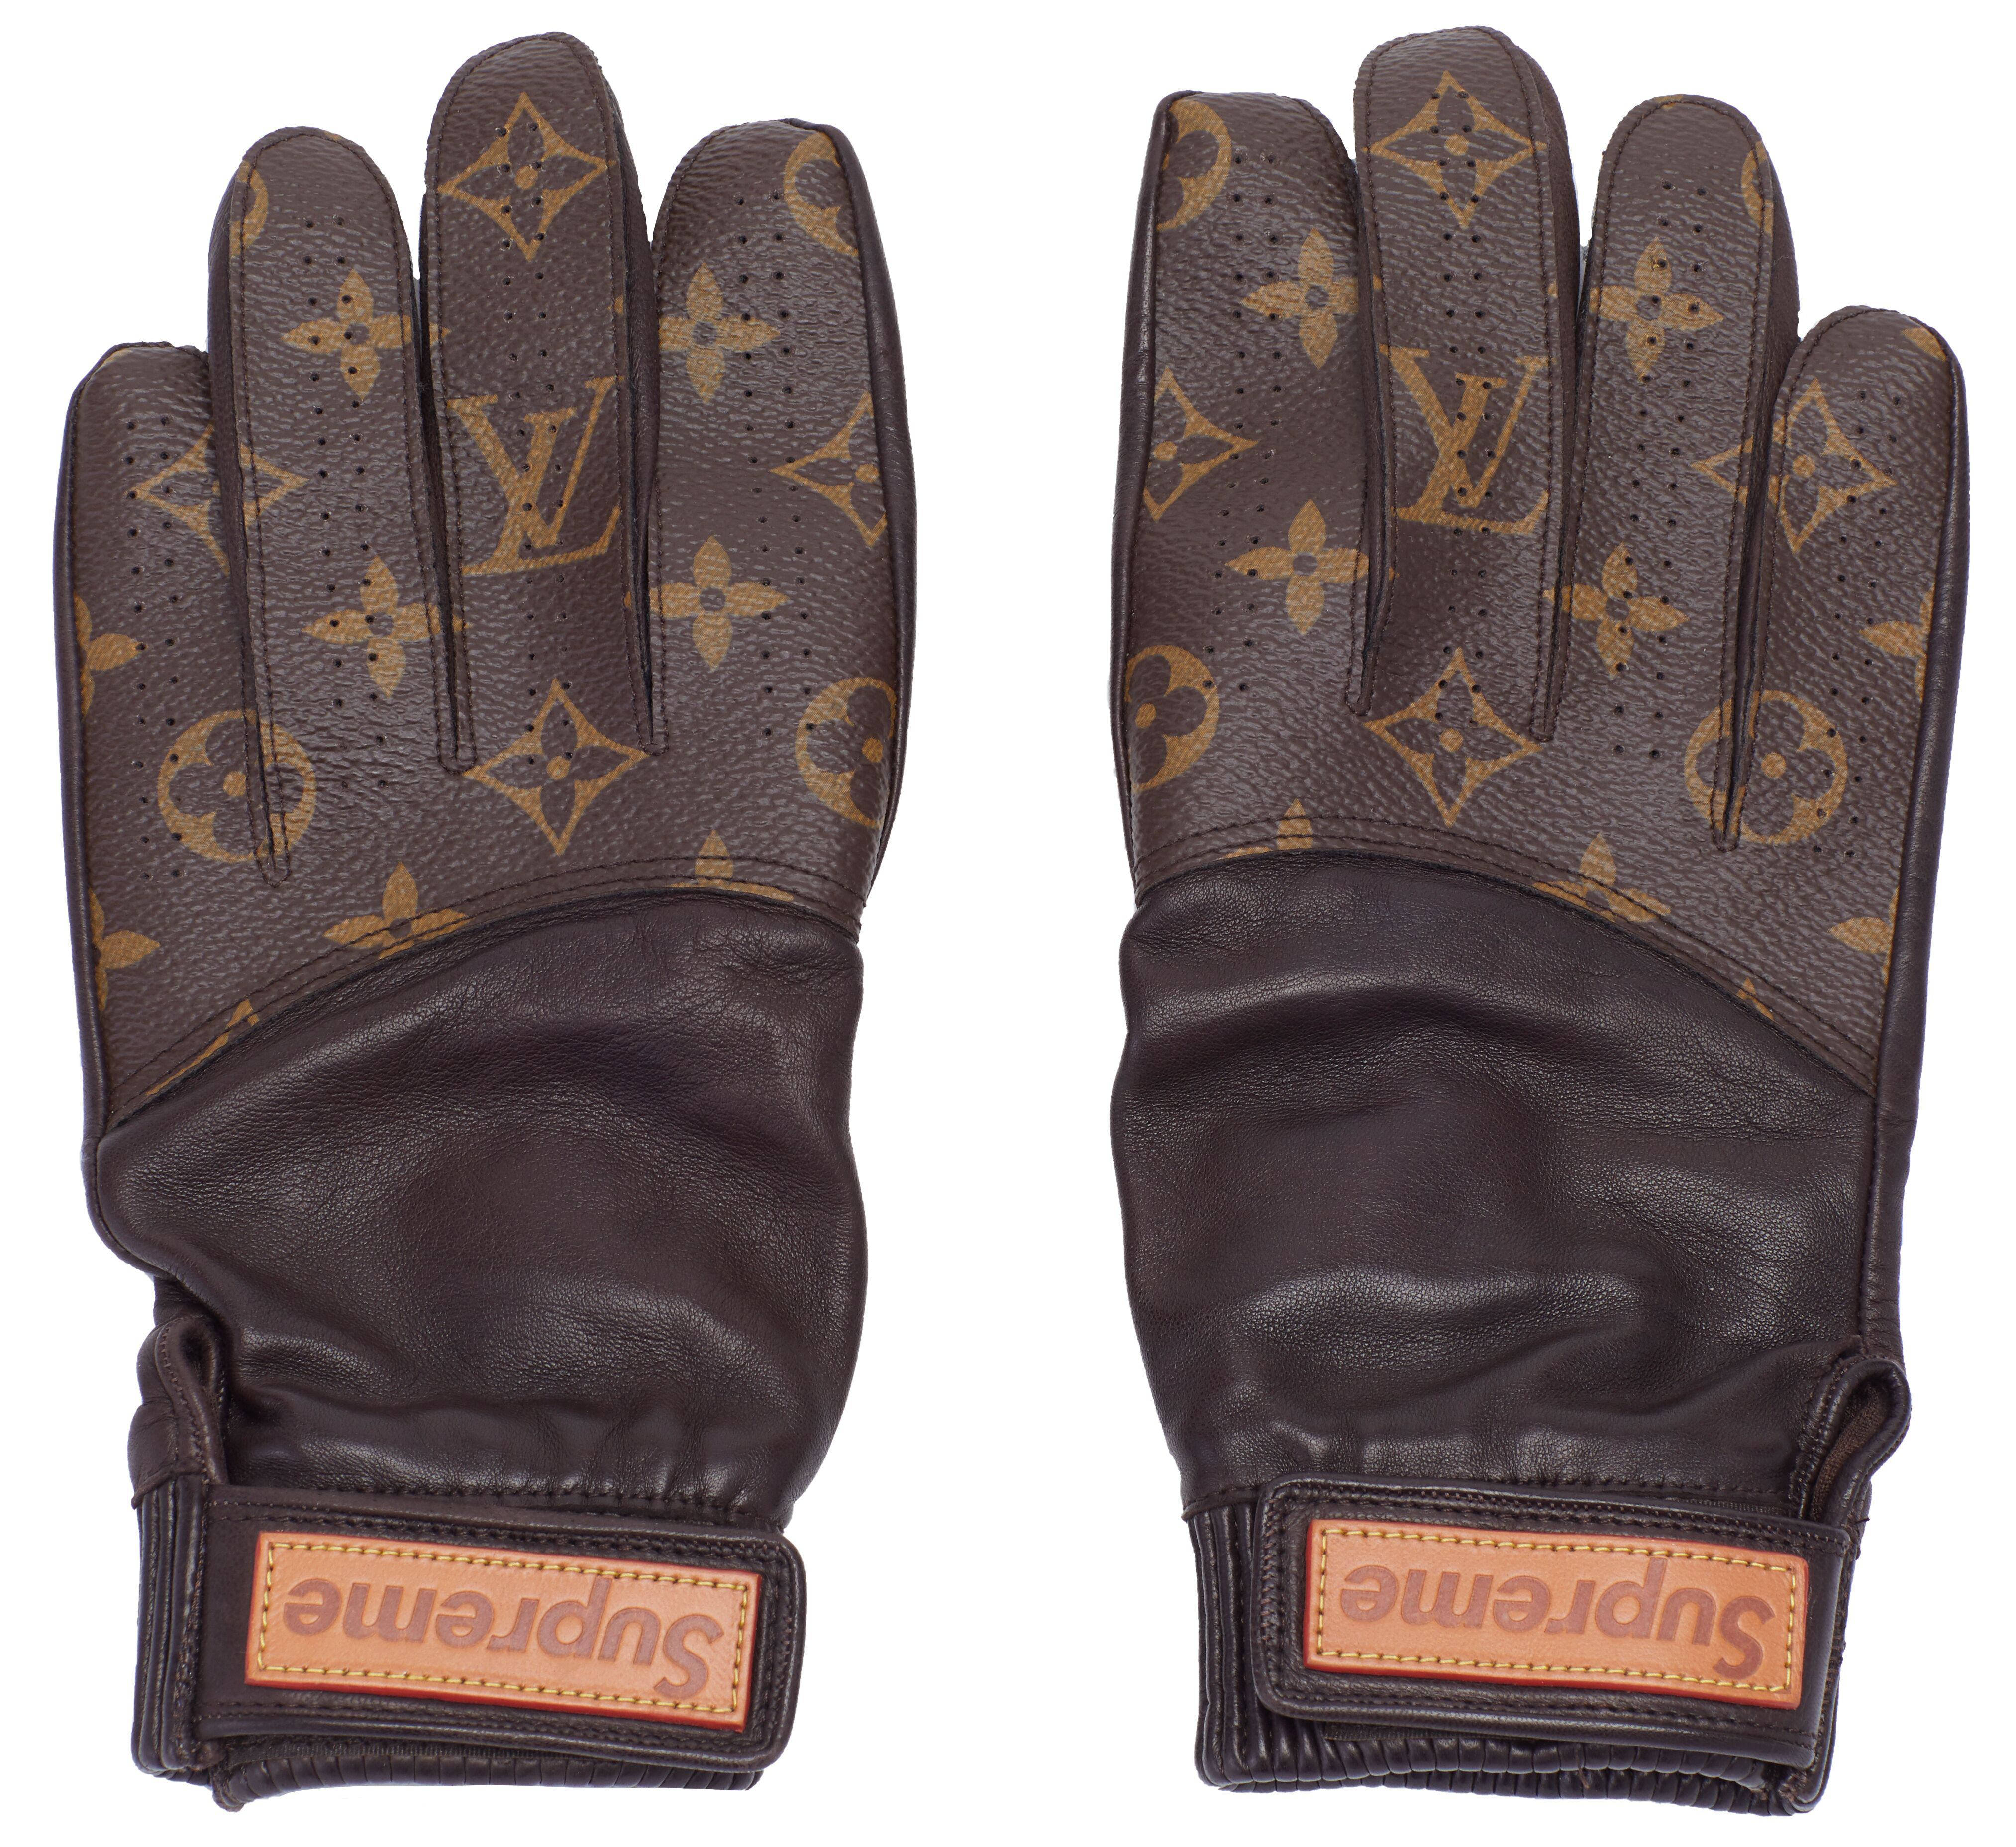 Louis Vuitton Gloves Online, SAVE 60%